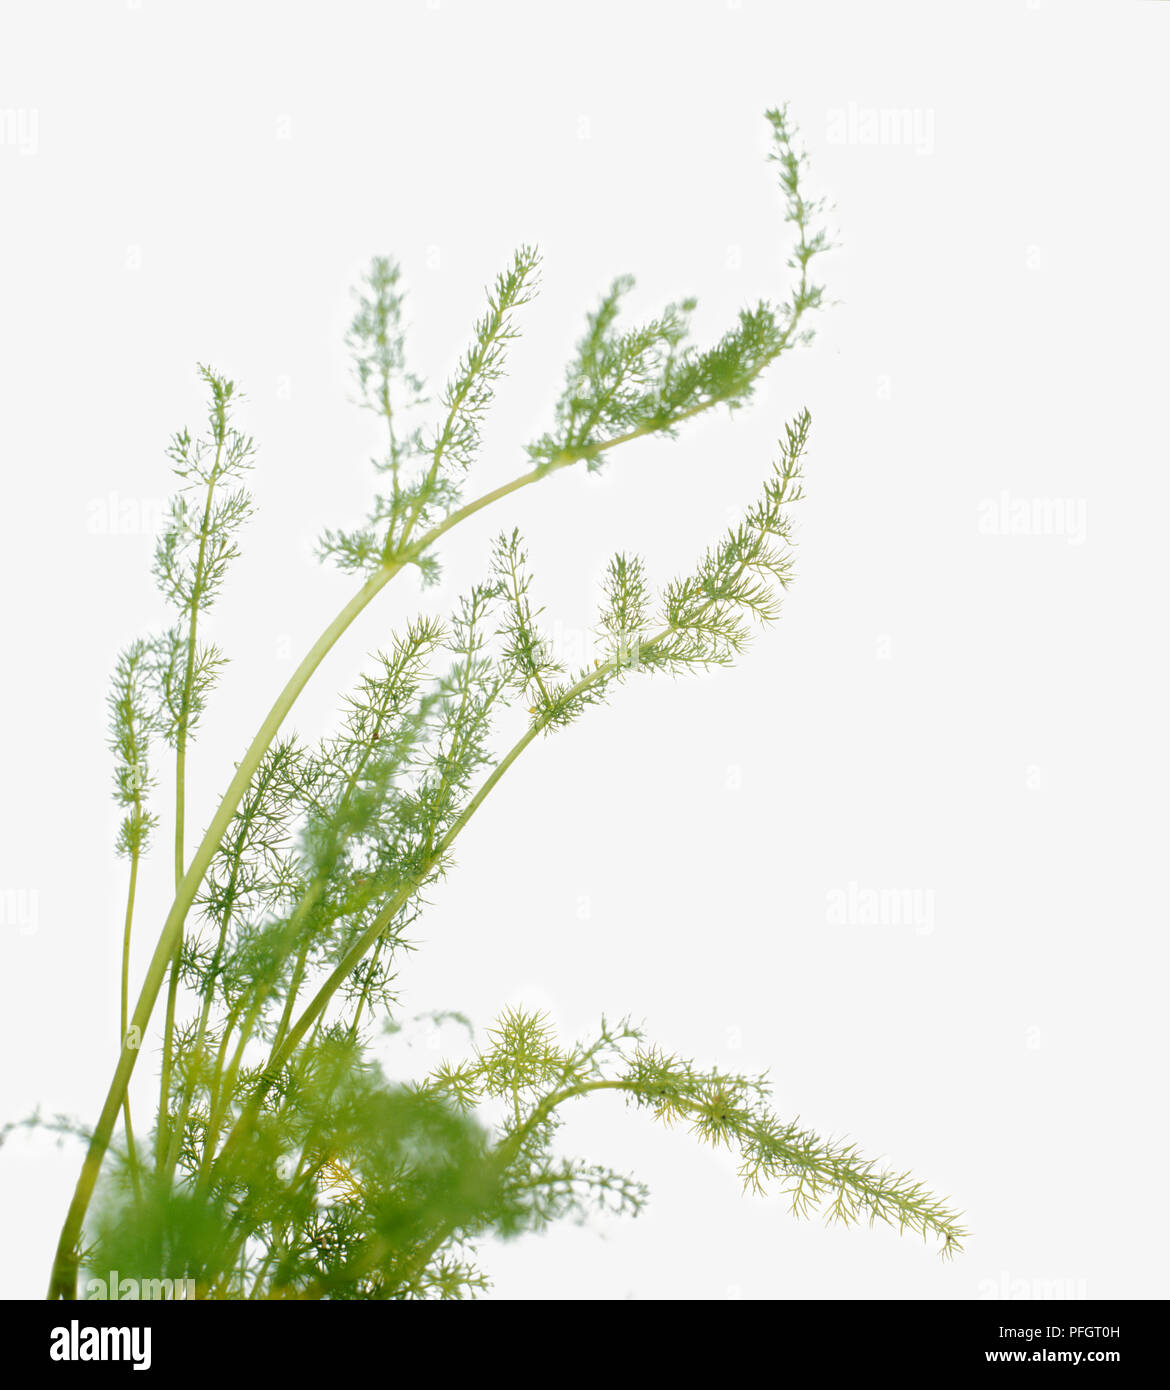 Meum athamanticum (Spignel), feuilles vertes sur de longues tiges Banque D'Images